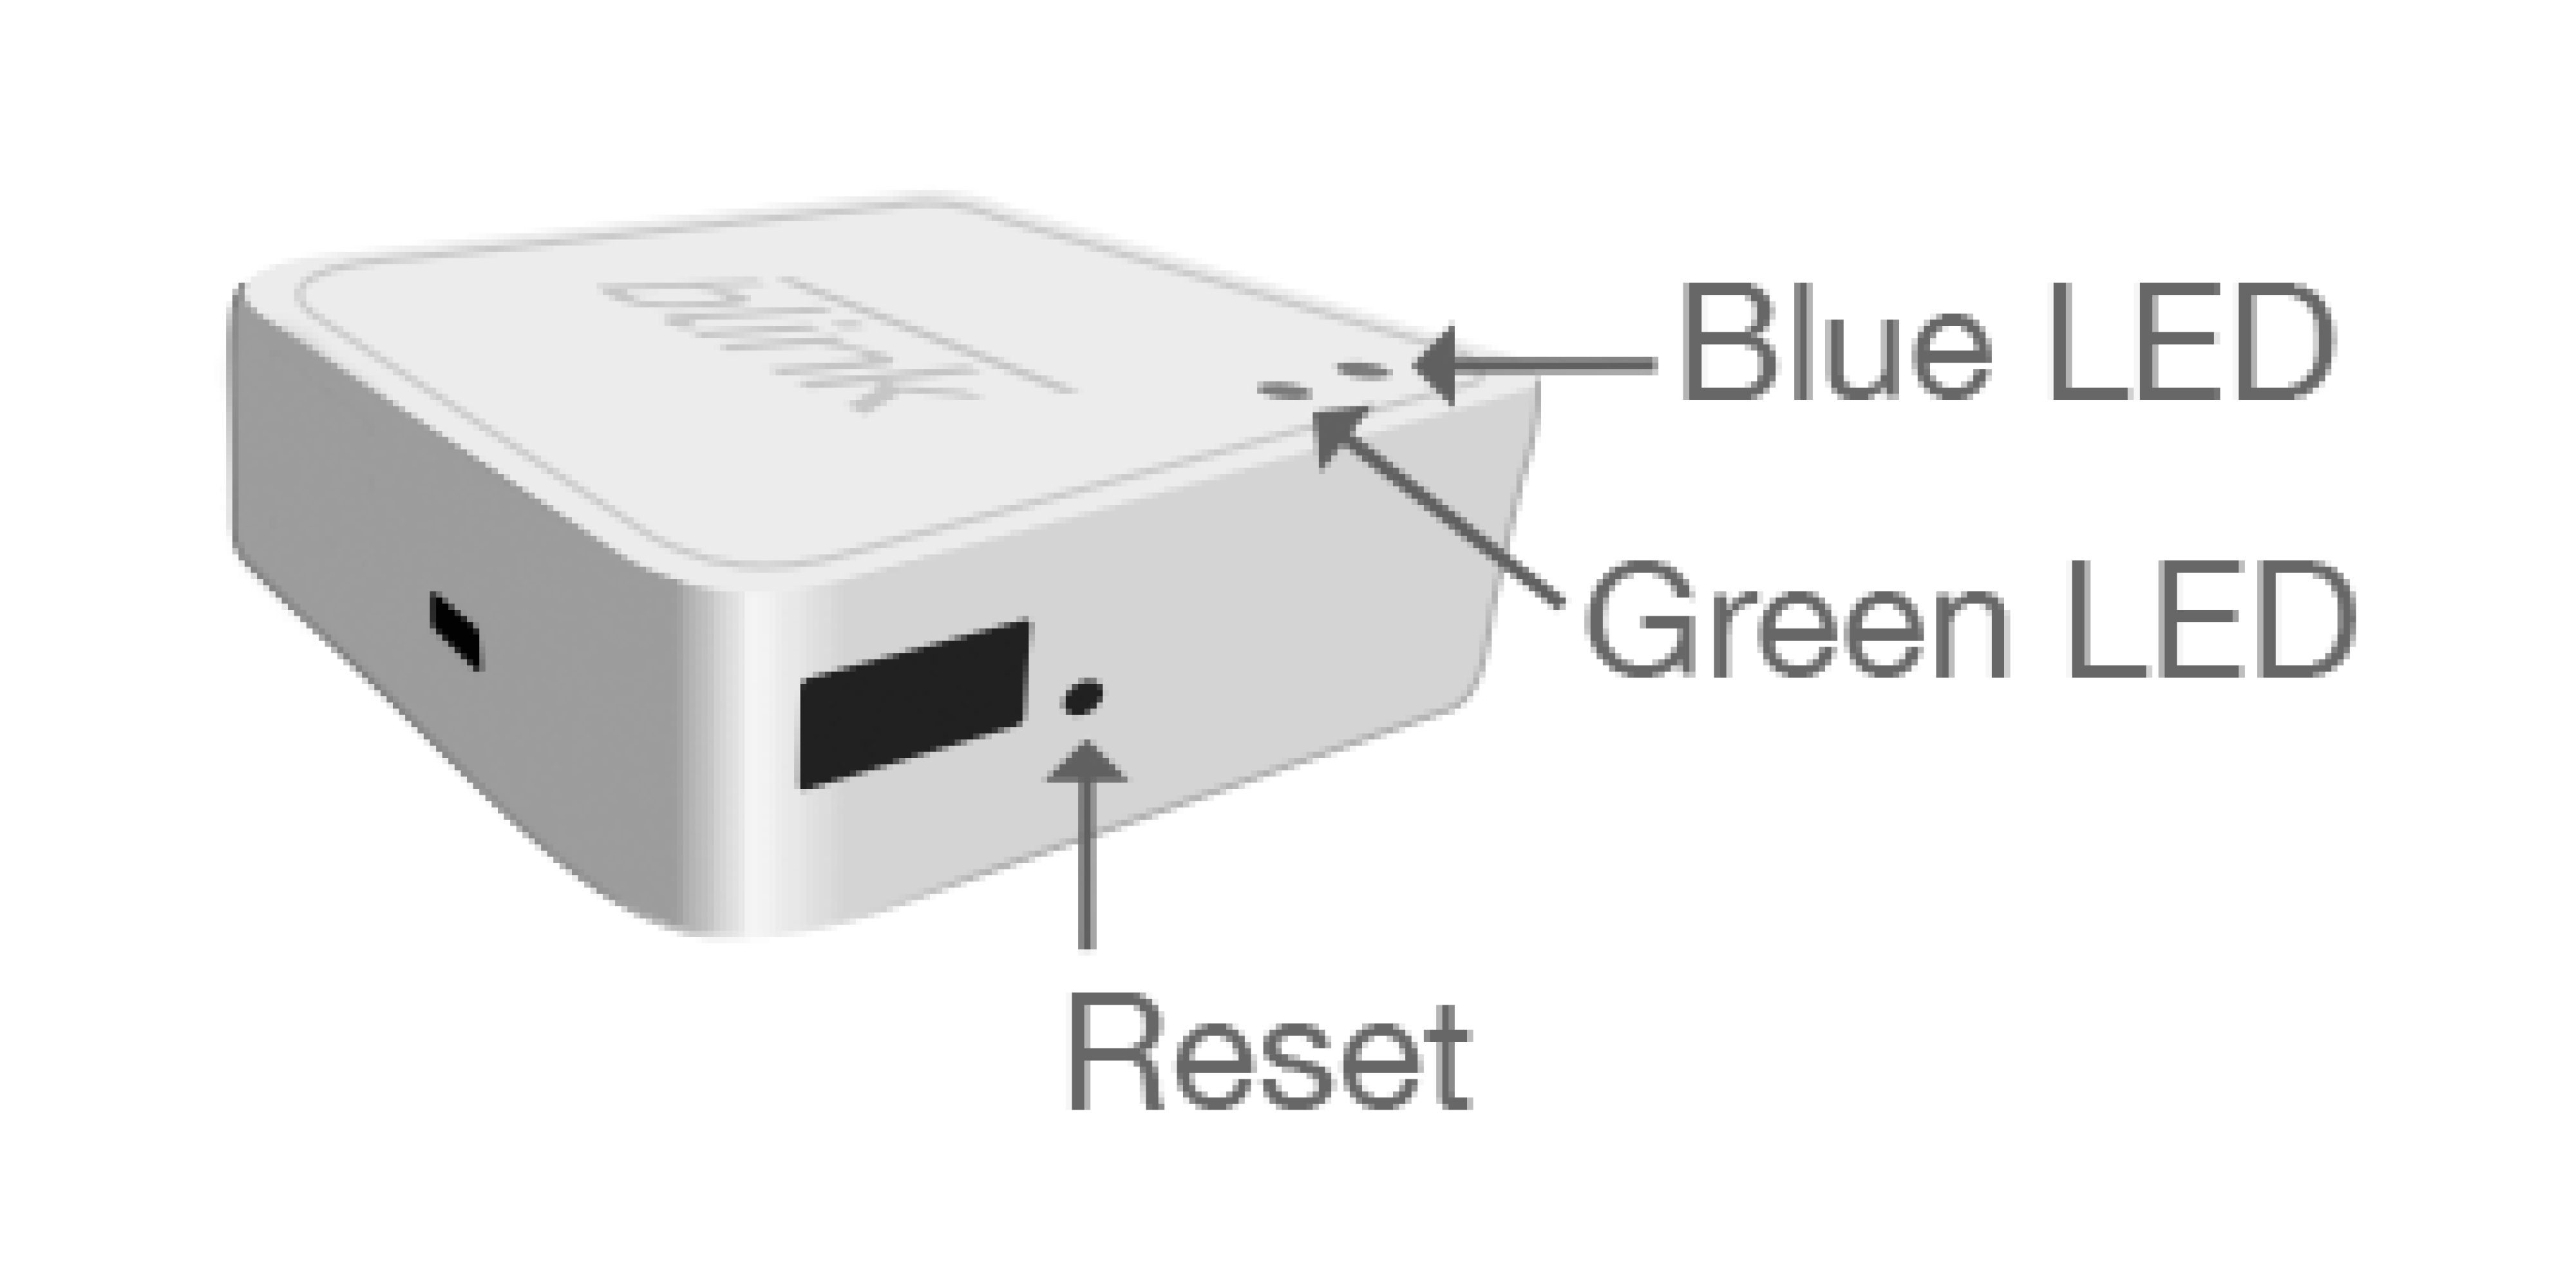 Bild, das das Sync-Modul (1. Generation) mit einer Reset-Taste neben dem USB-Anschluss zeigt.